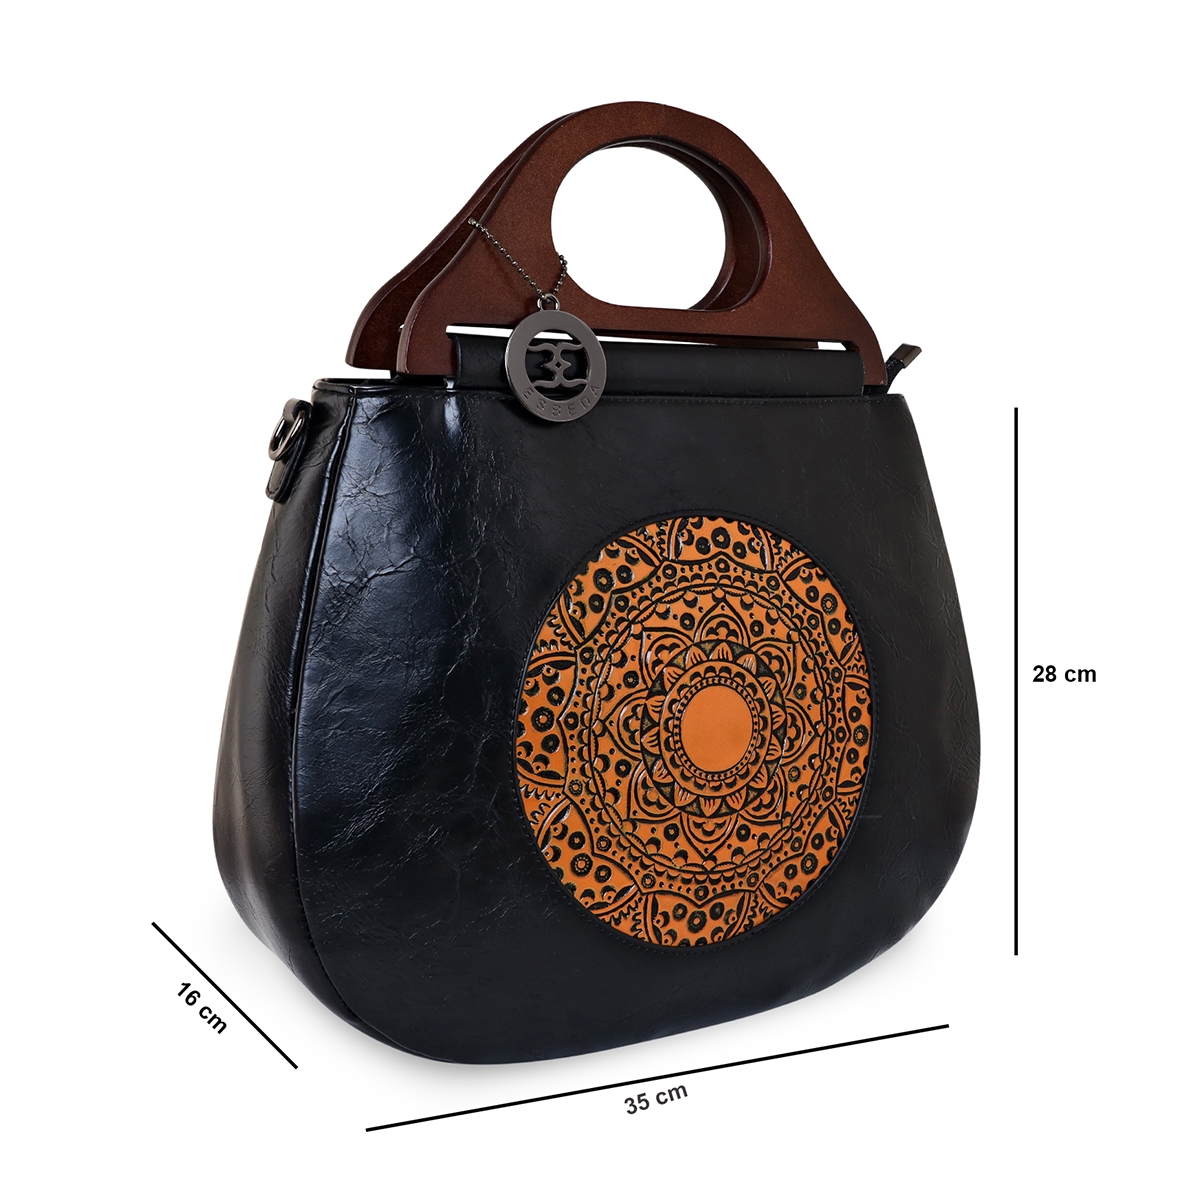 ESBEDA | ESBEDA Black Color Floral Embroidery Pattern Handbag for Women  1